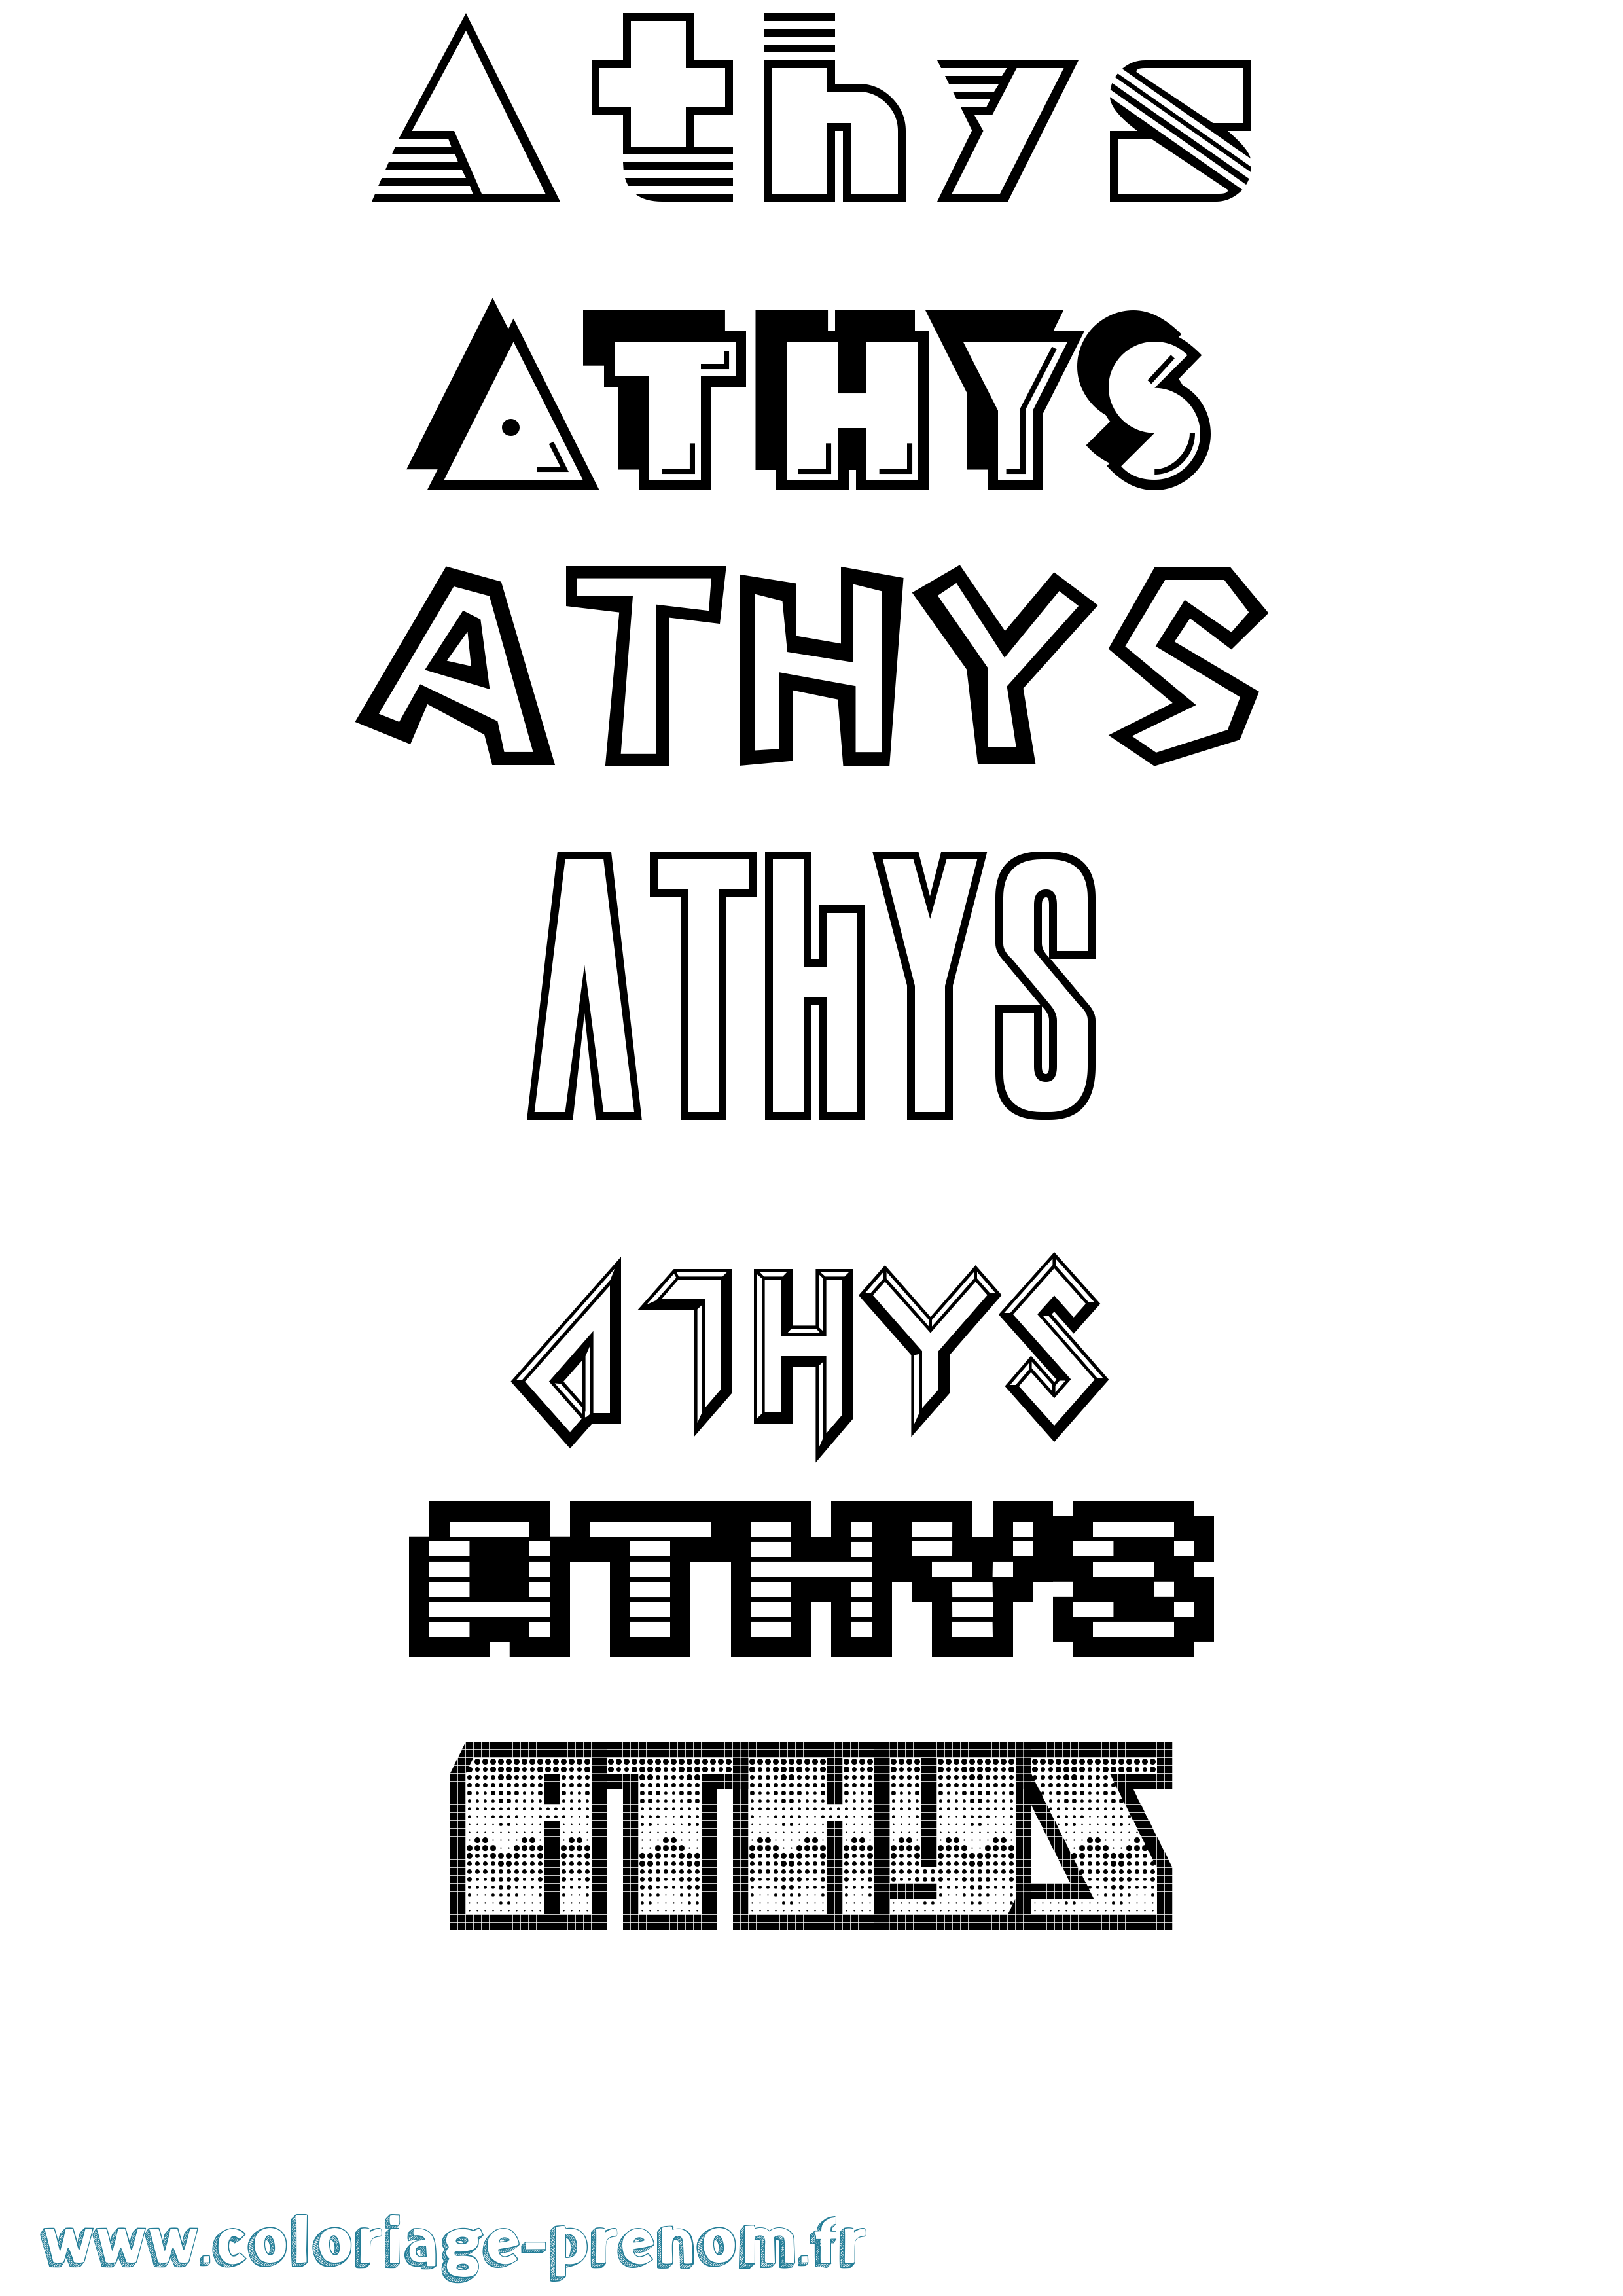 Coloriage prénom Athys Jeux Vidéos